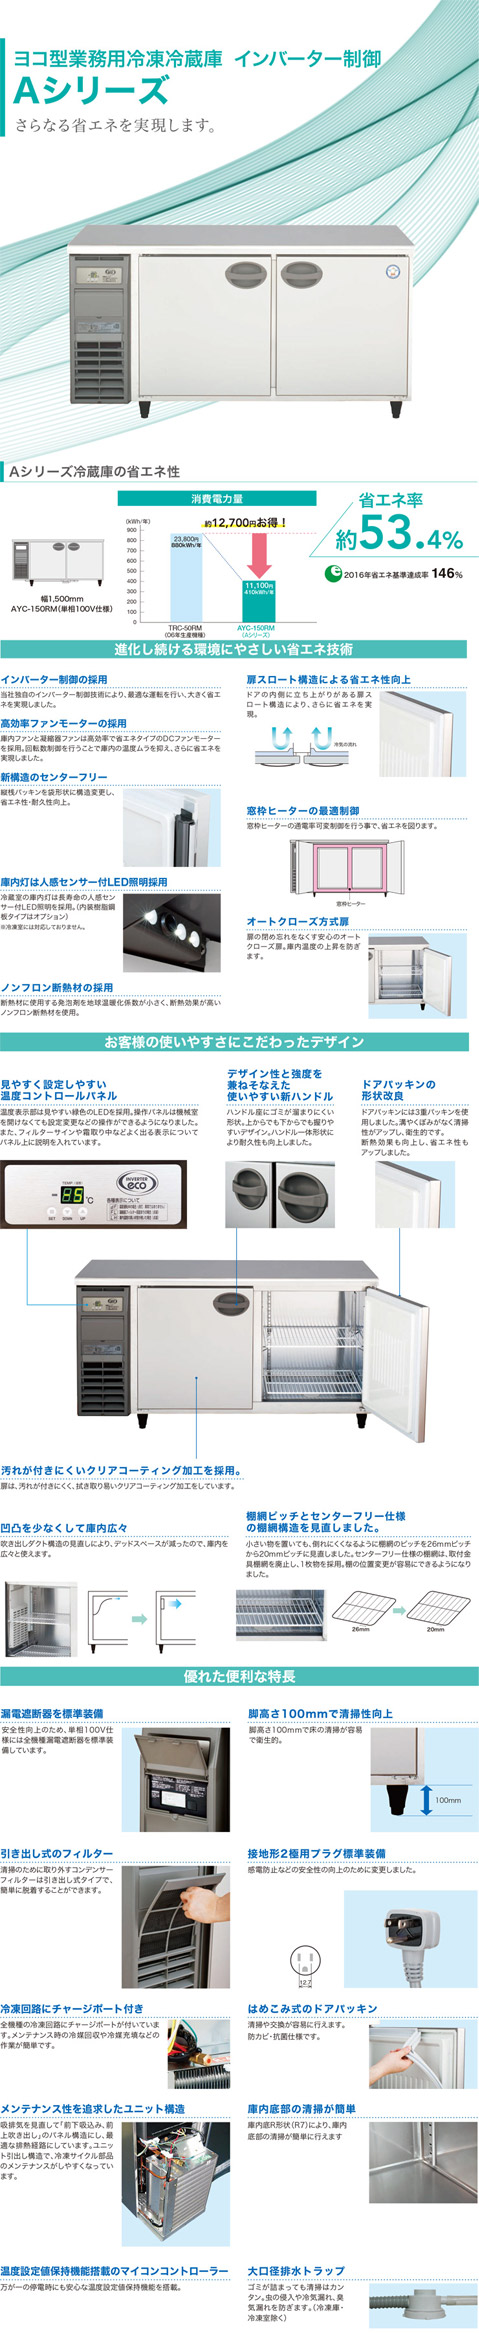 フクシマガリレイ 横型インバーター冷蔵庫 型式：LRC-150RM-E (旧AYC-150RM-E）送料無料 (メーカーより直送) メーカー保証付  受注生産品 r0403716 空調店舗厨房センター 通販 